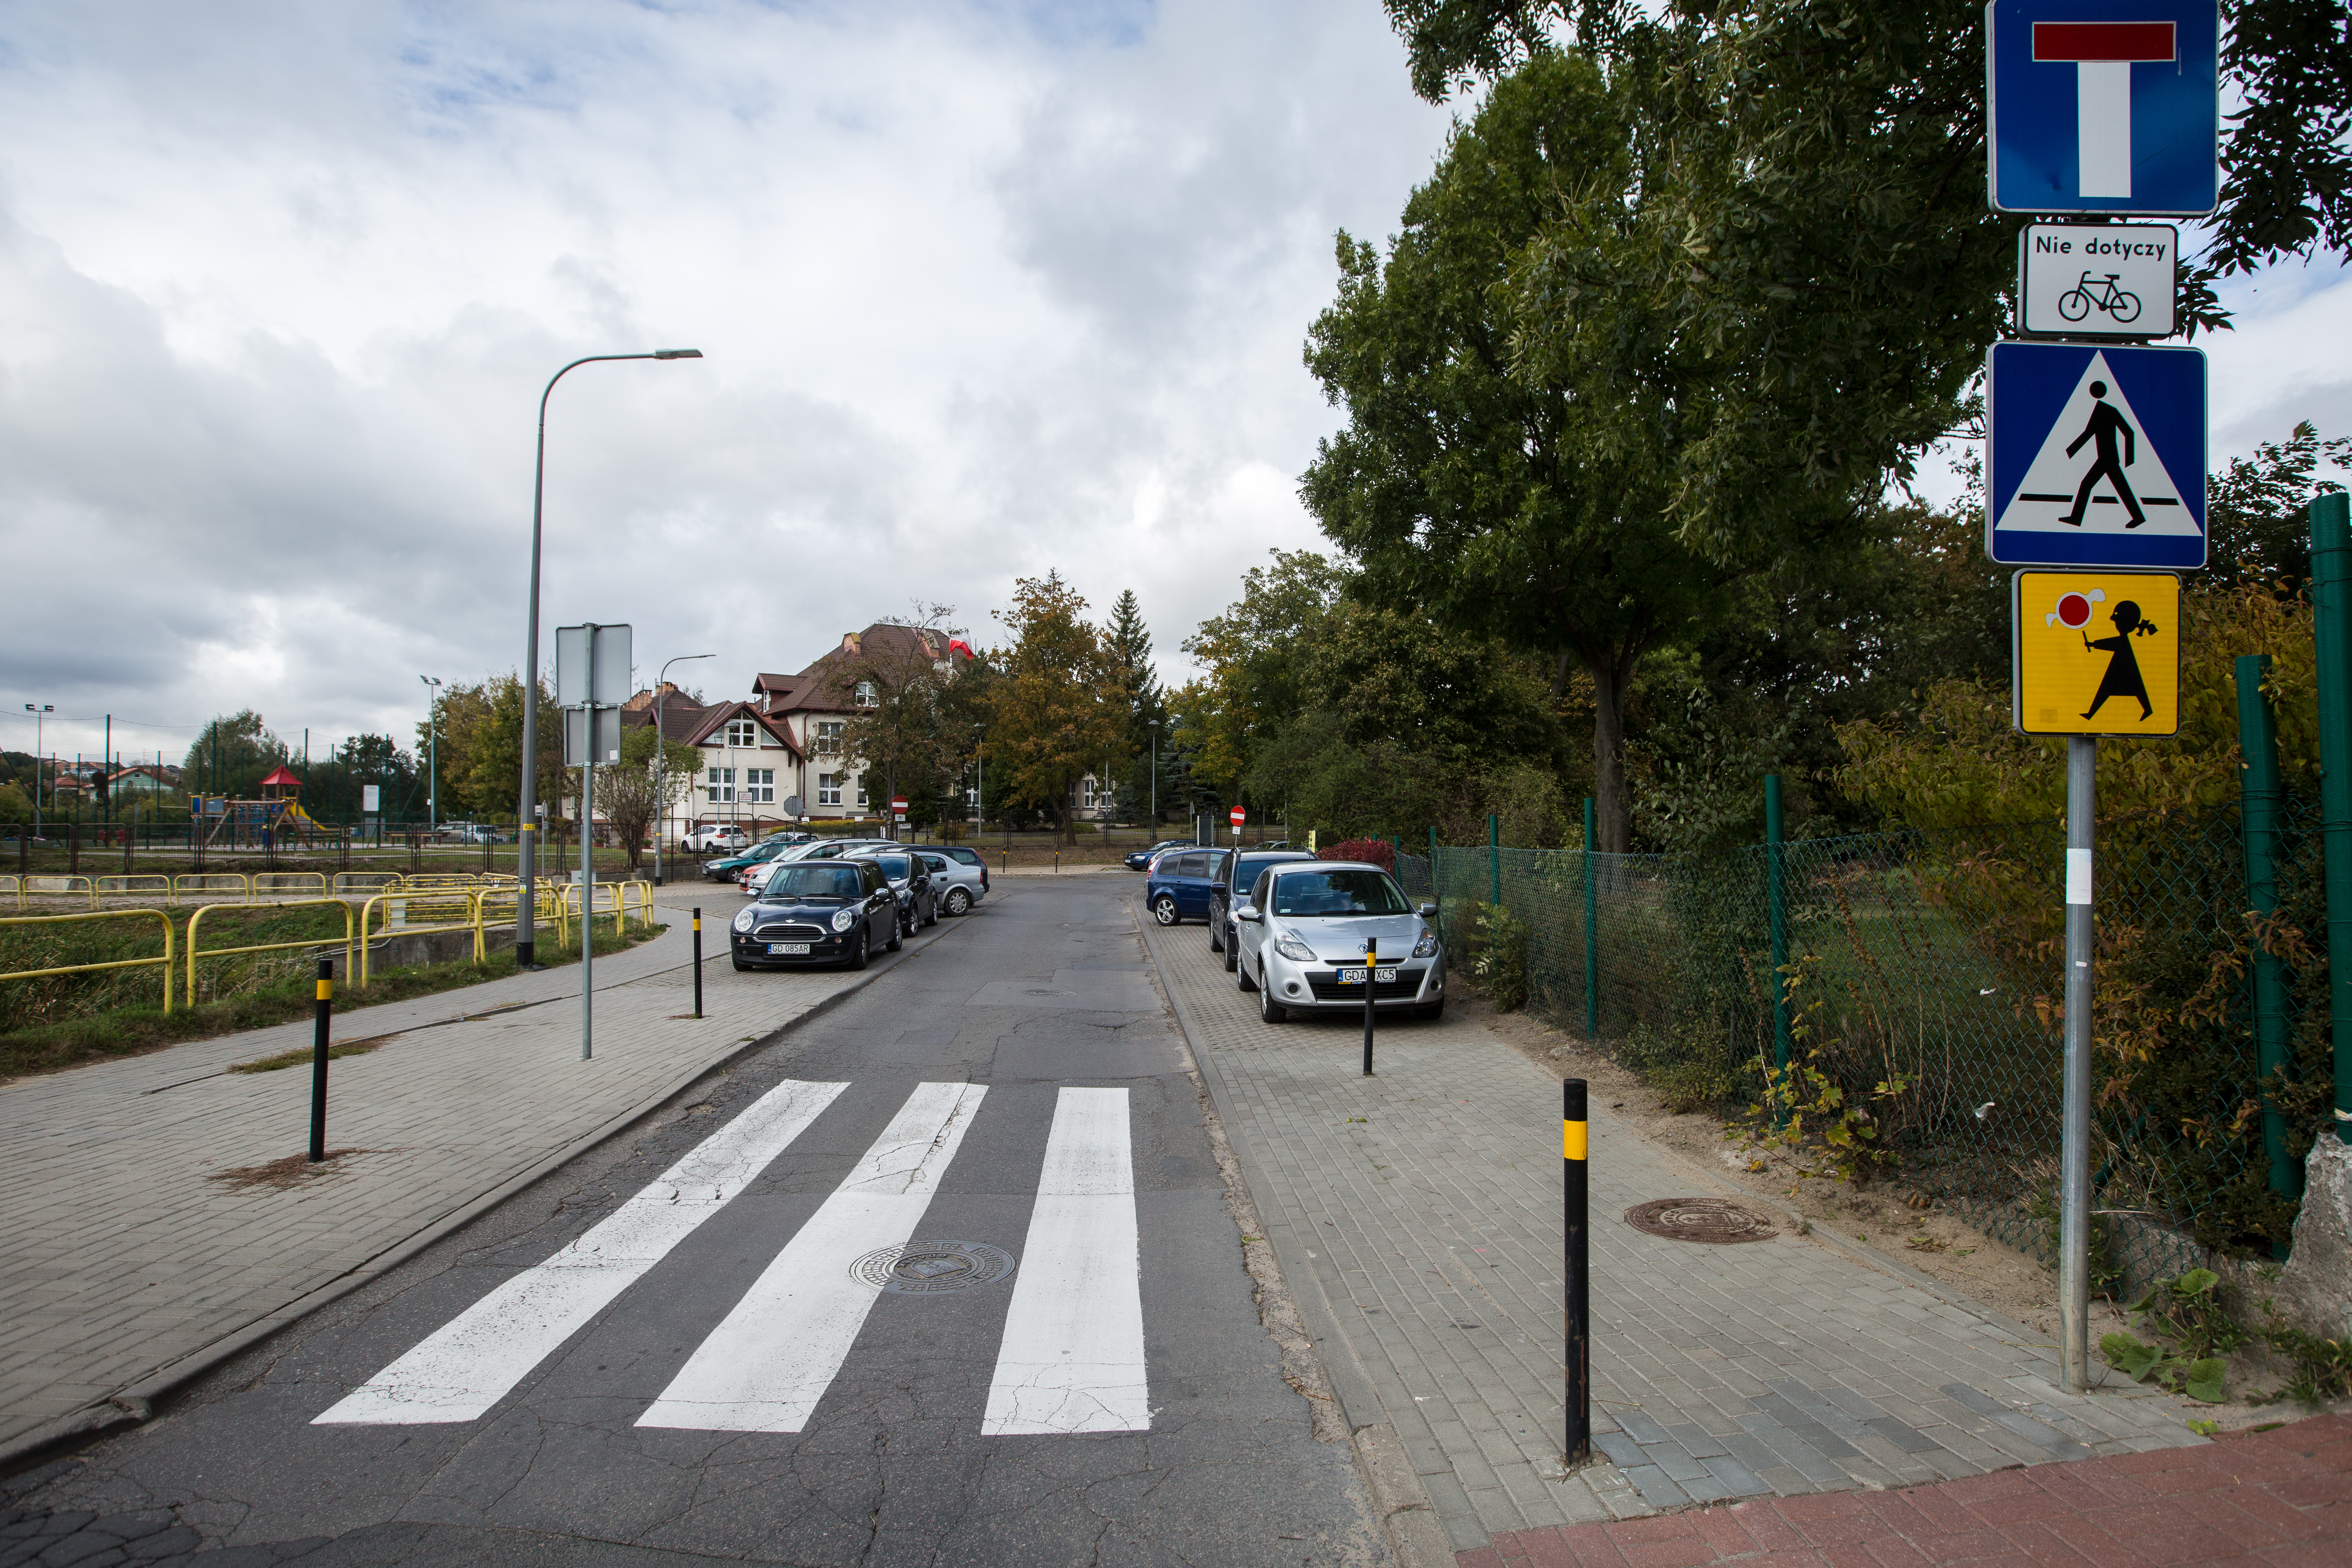 widok na ulicę z wyznaczonym przejściem dla pieszych oraz chodnik po obu stronach drogi z wydzielonymi miejscami parkingowymi